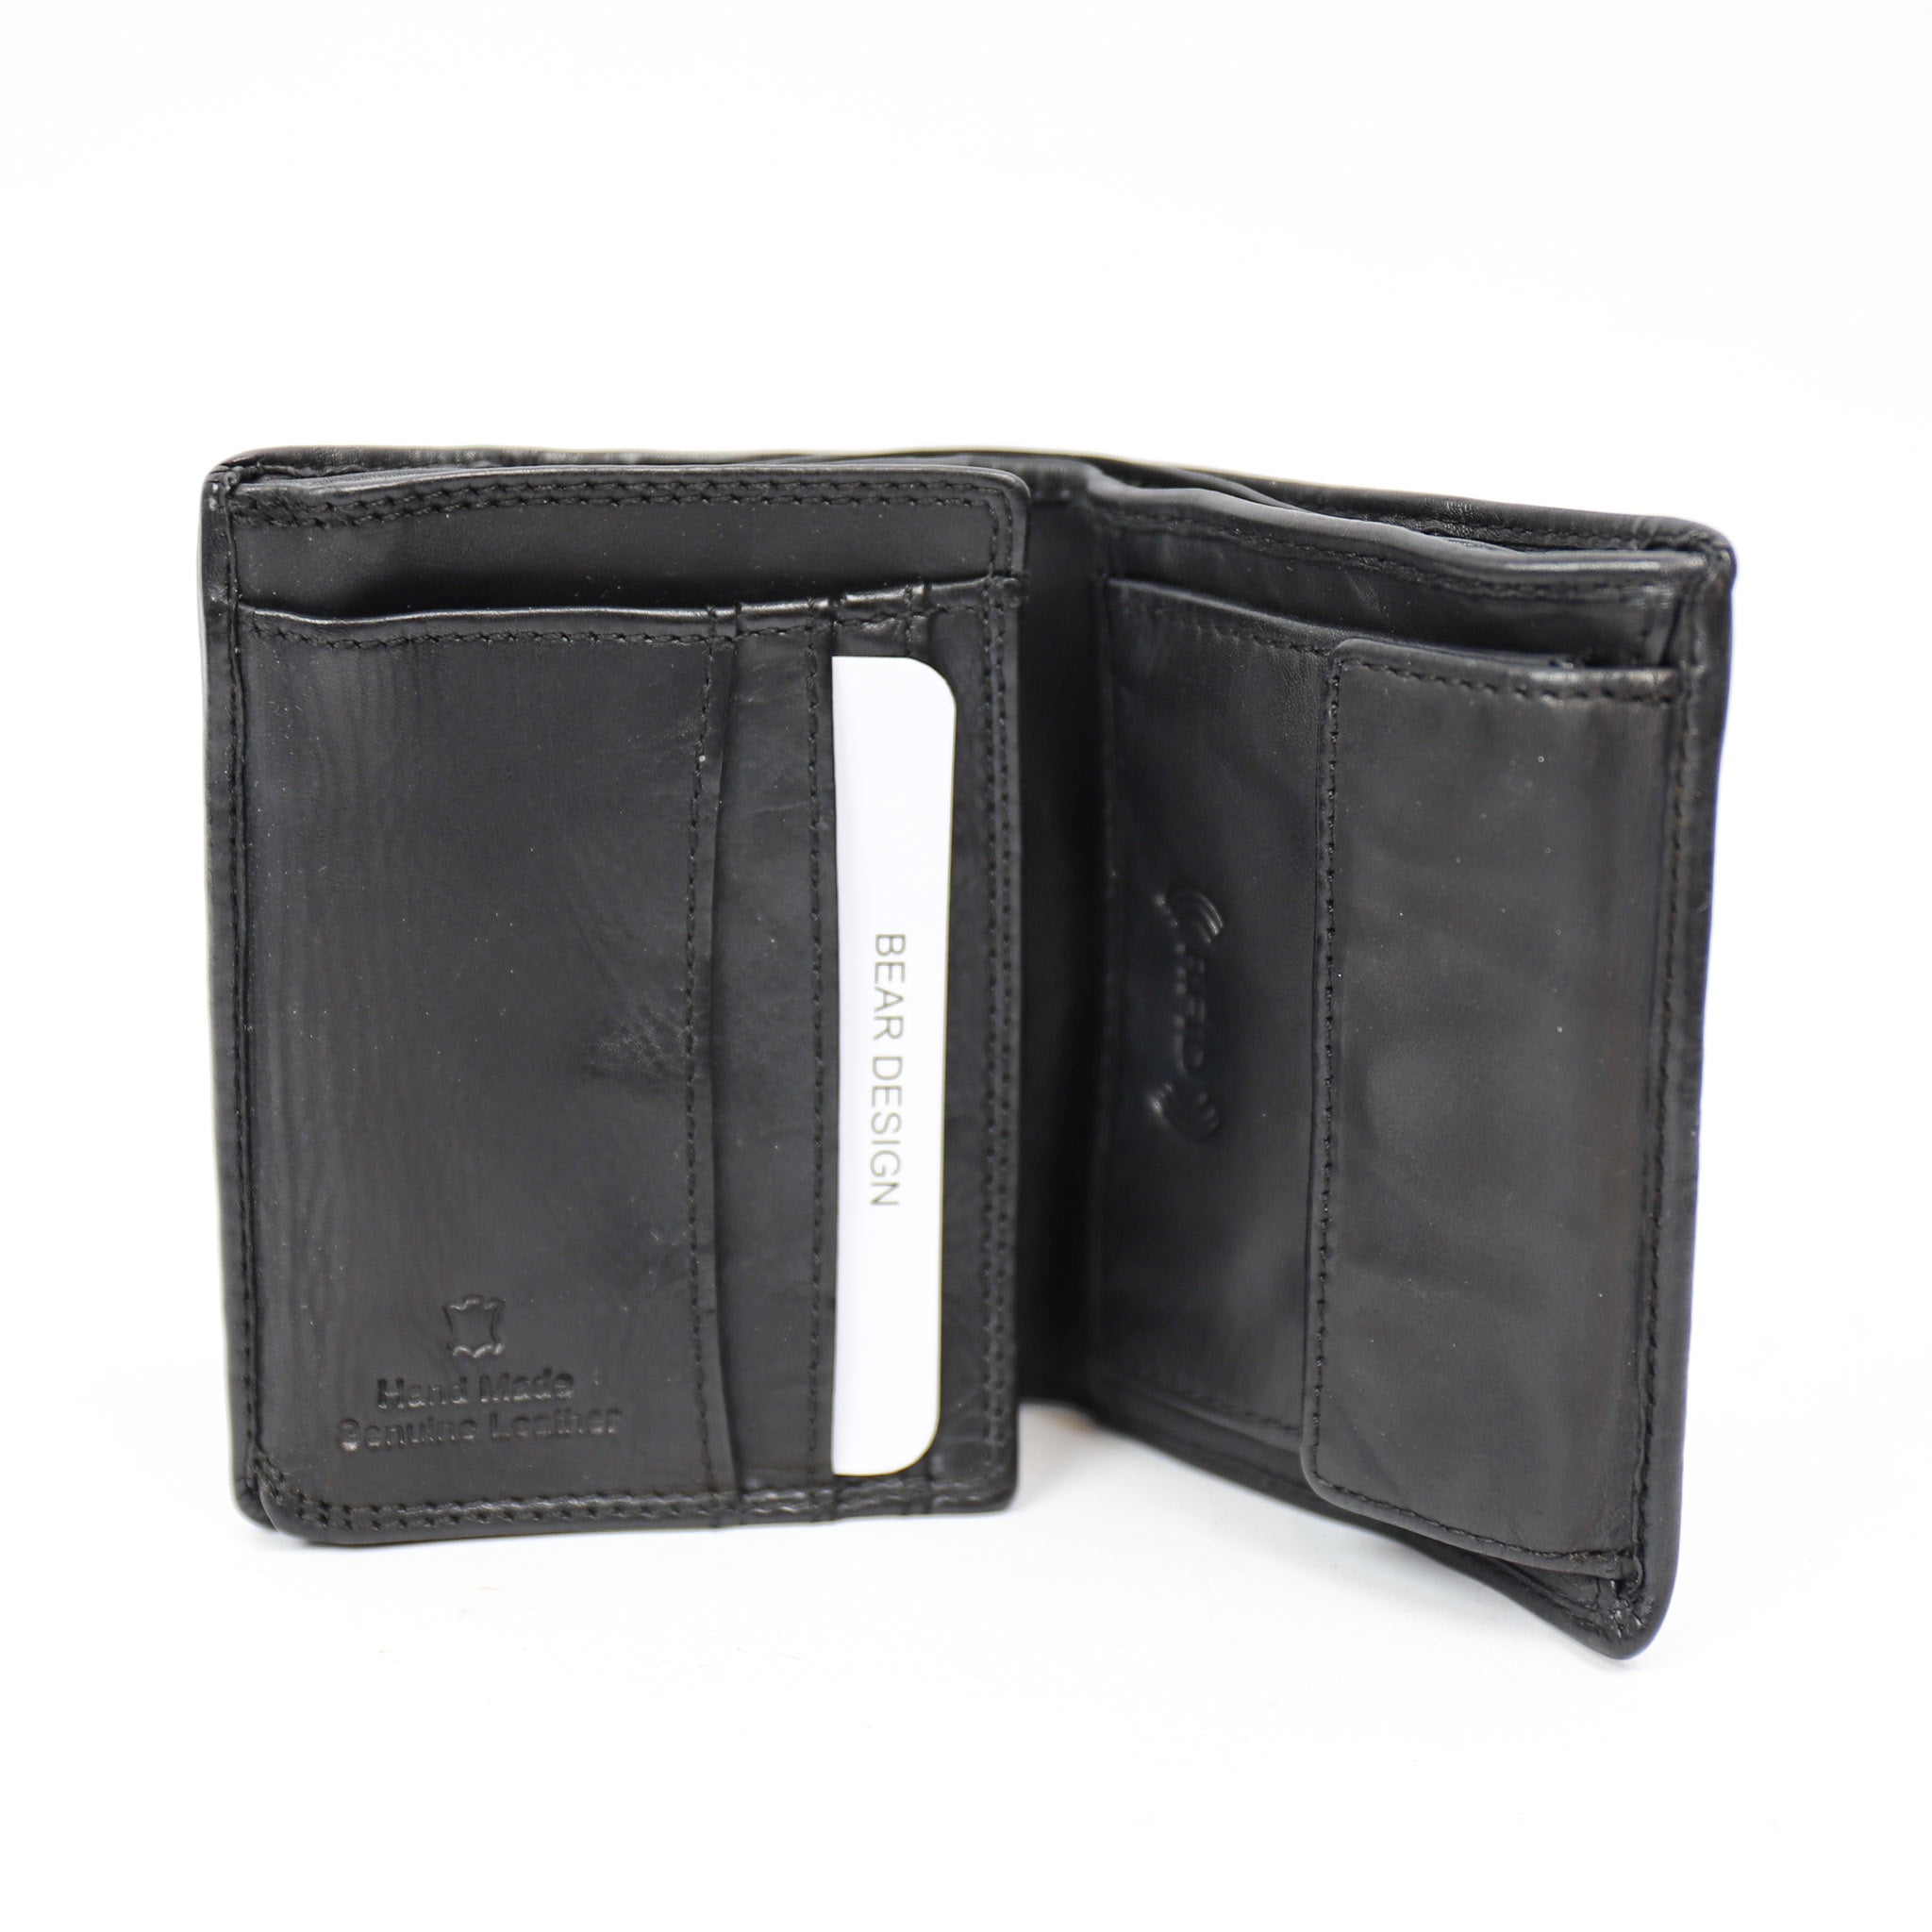 Brieftasche 'Harold' schwarz - CL 14985